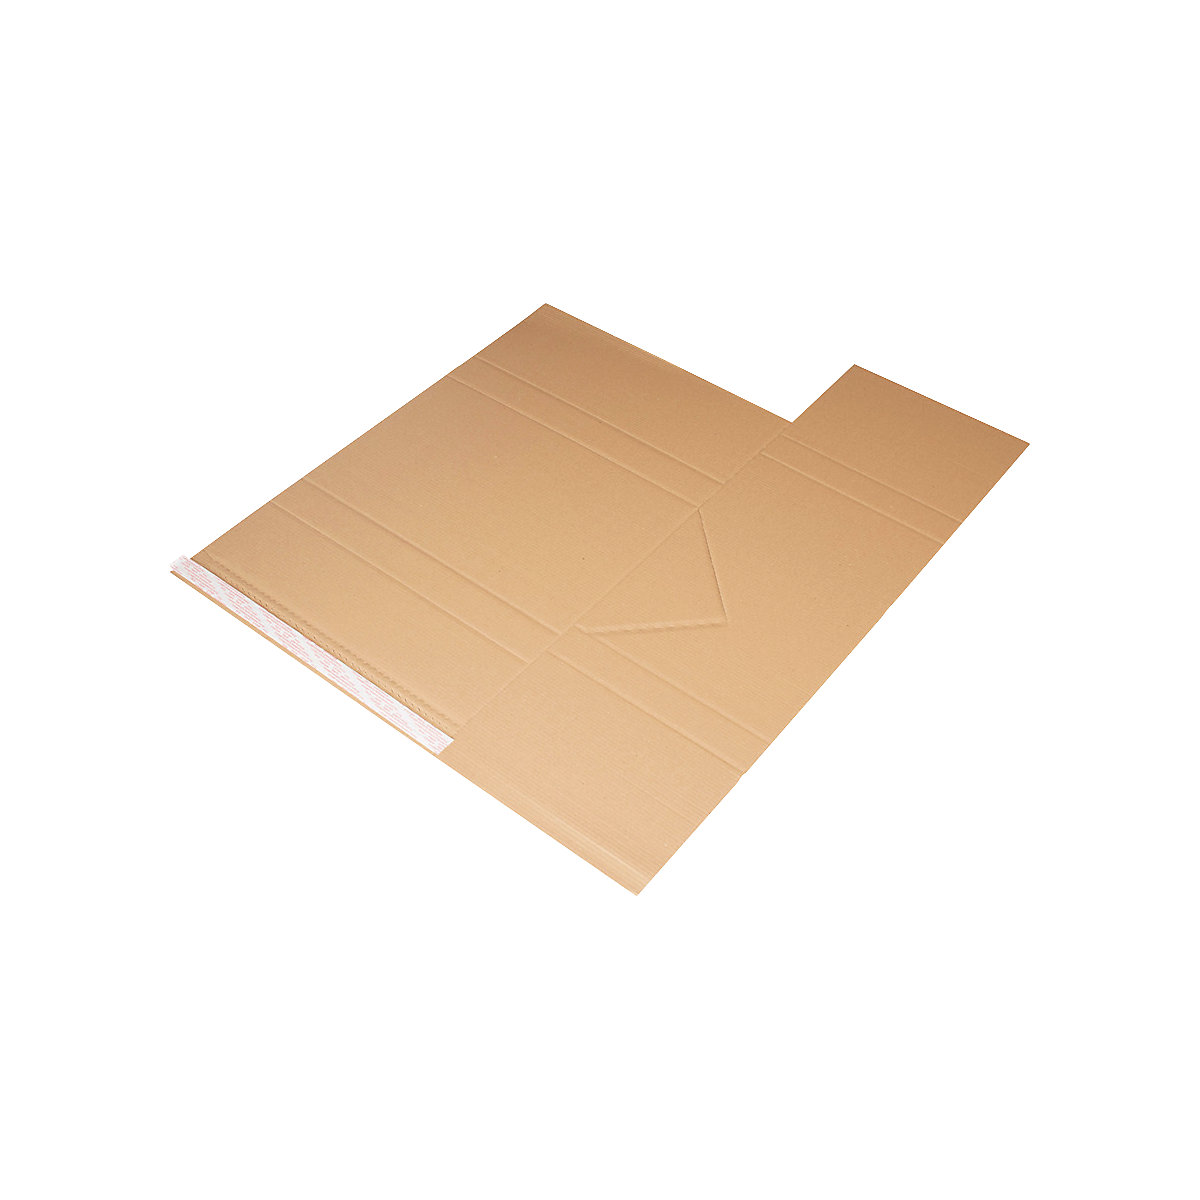 Imballaggio universale Drehfix – flow, con chiusura autoadesiva, lungh. x largh. 455 x 320 mm, a partire da 12 pz.-1